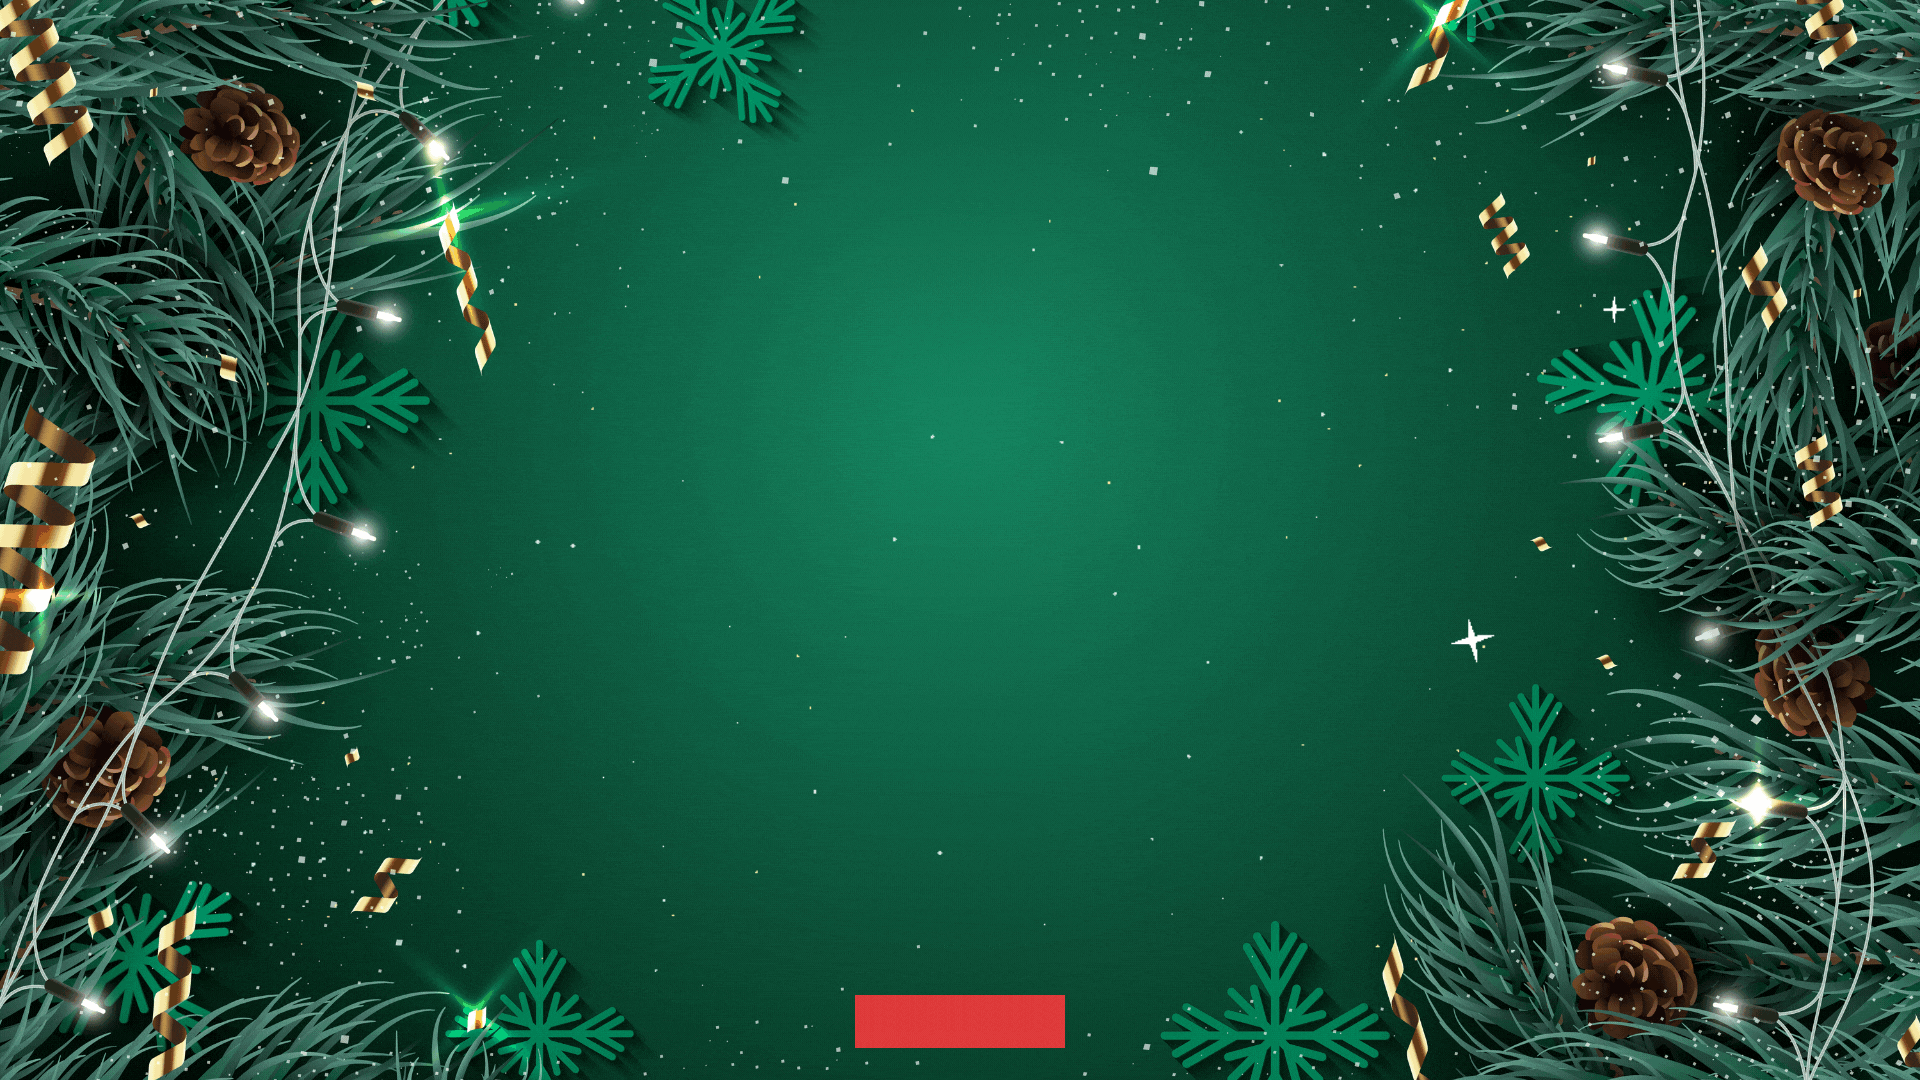 Christmas Live Wallpaper (v3.0) on Make a GIF